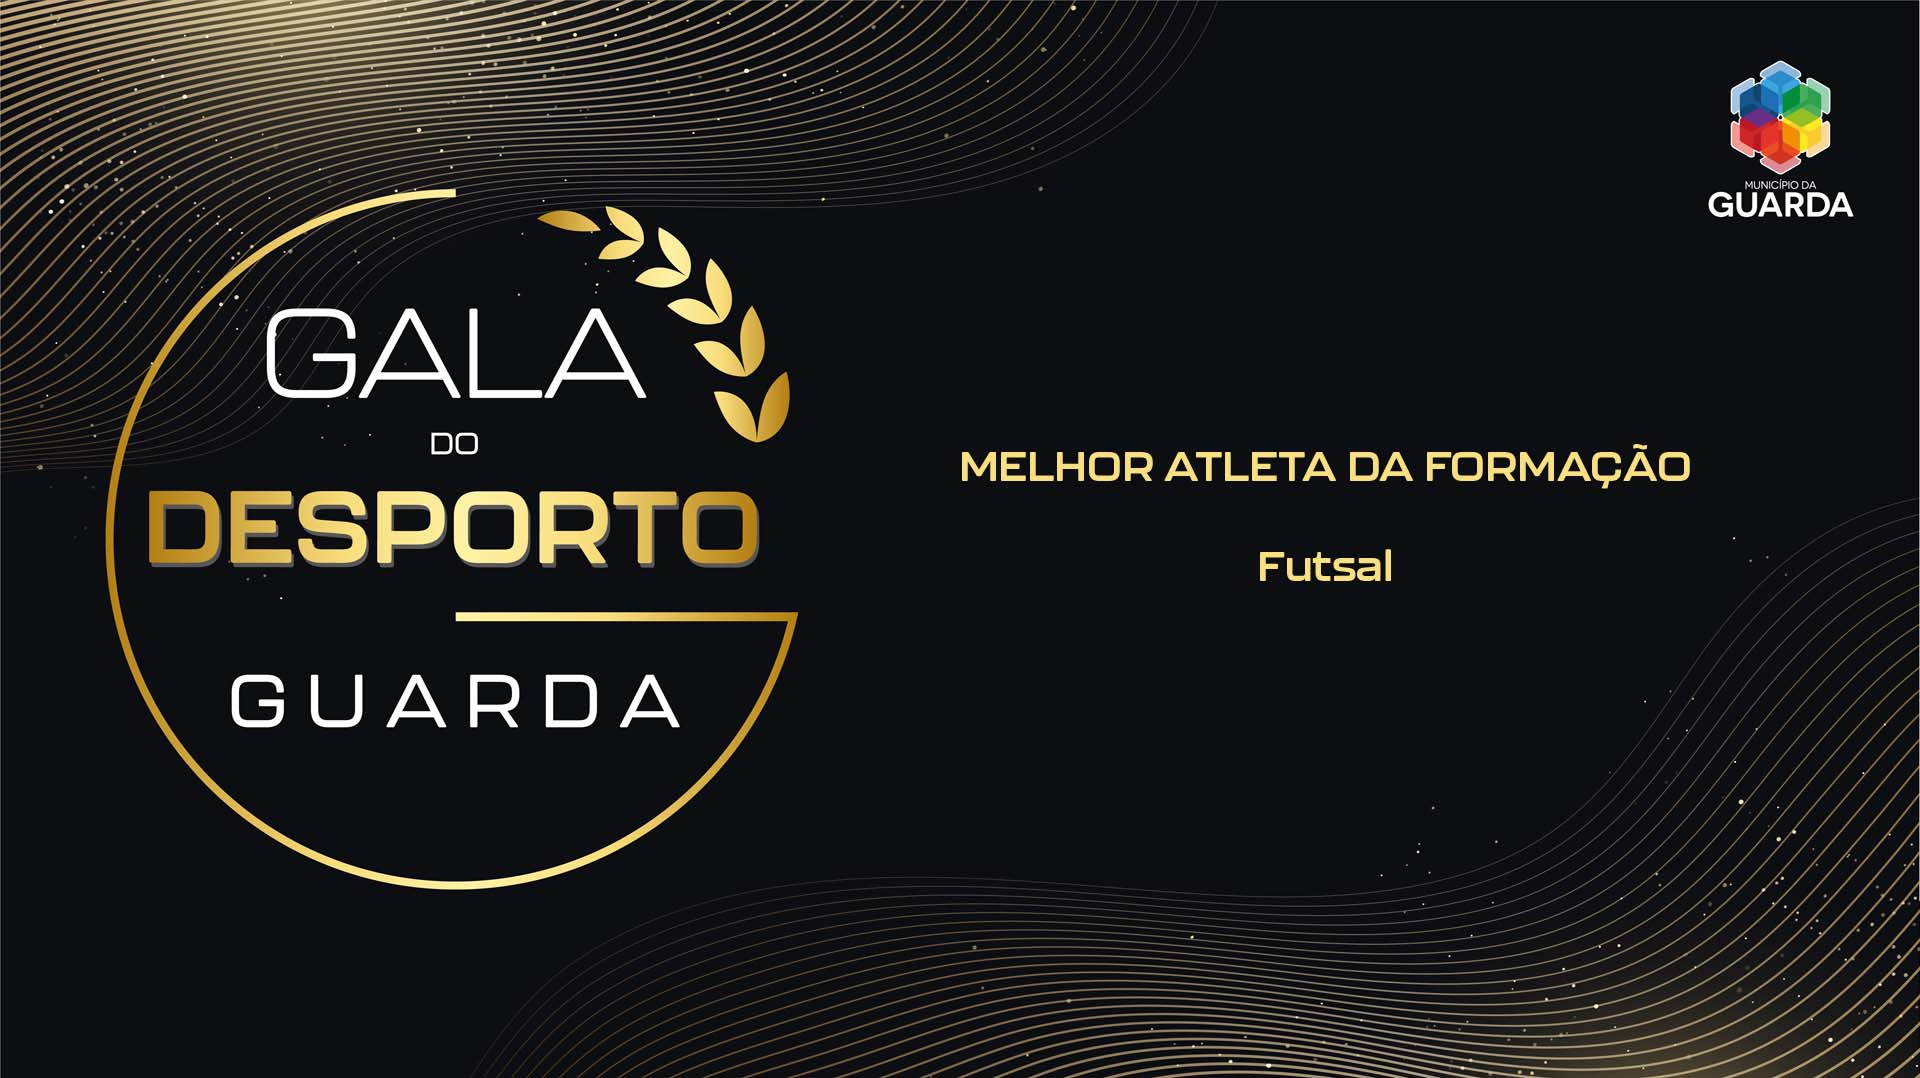 Imagem: MELHOR ATLETA DA FORMAÇÃO - Futsal